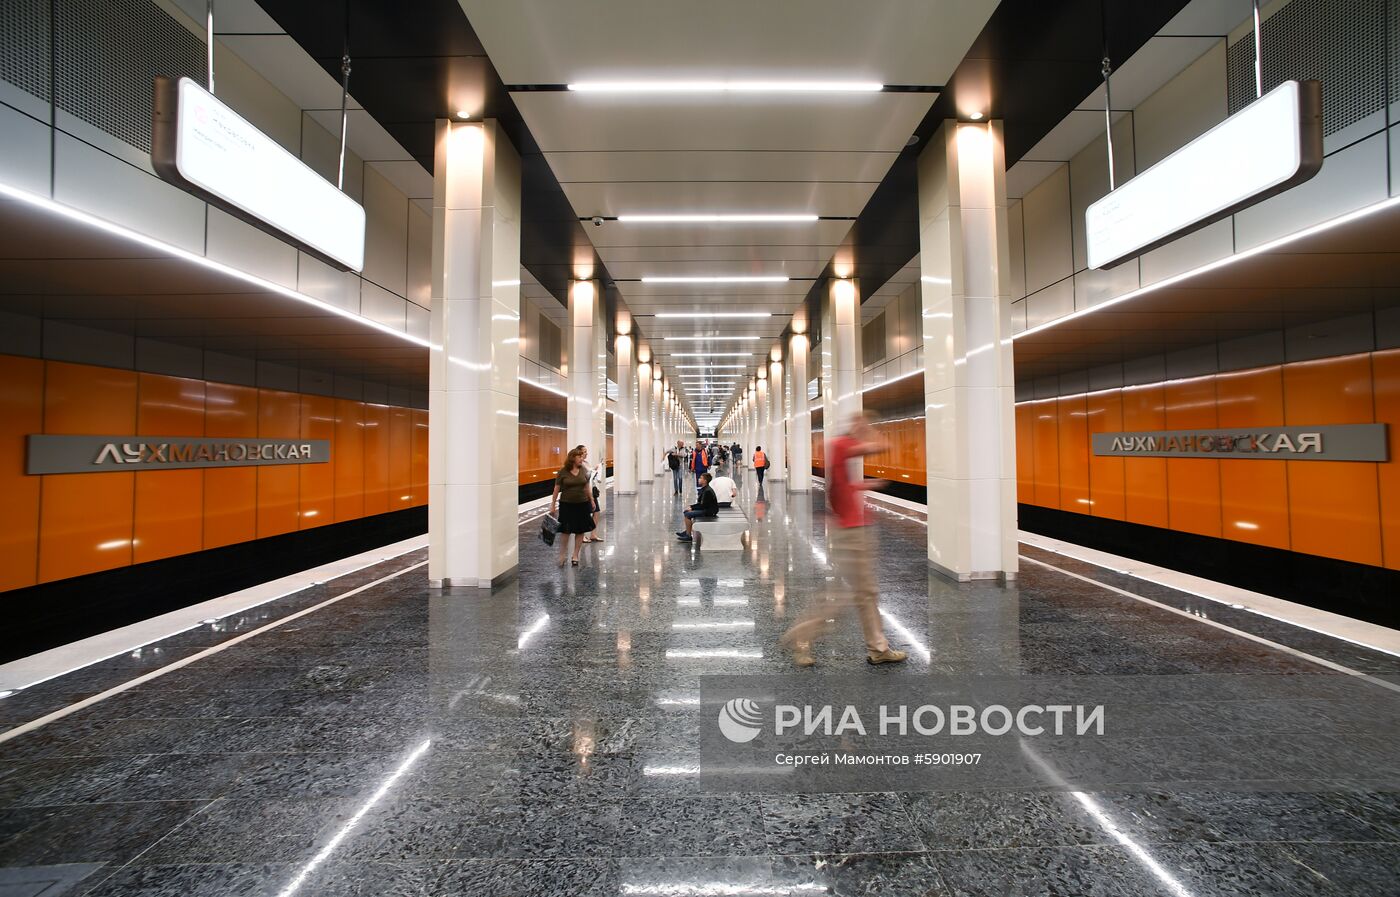 Открытие новых станций метро на Некрасовской линии